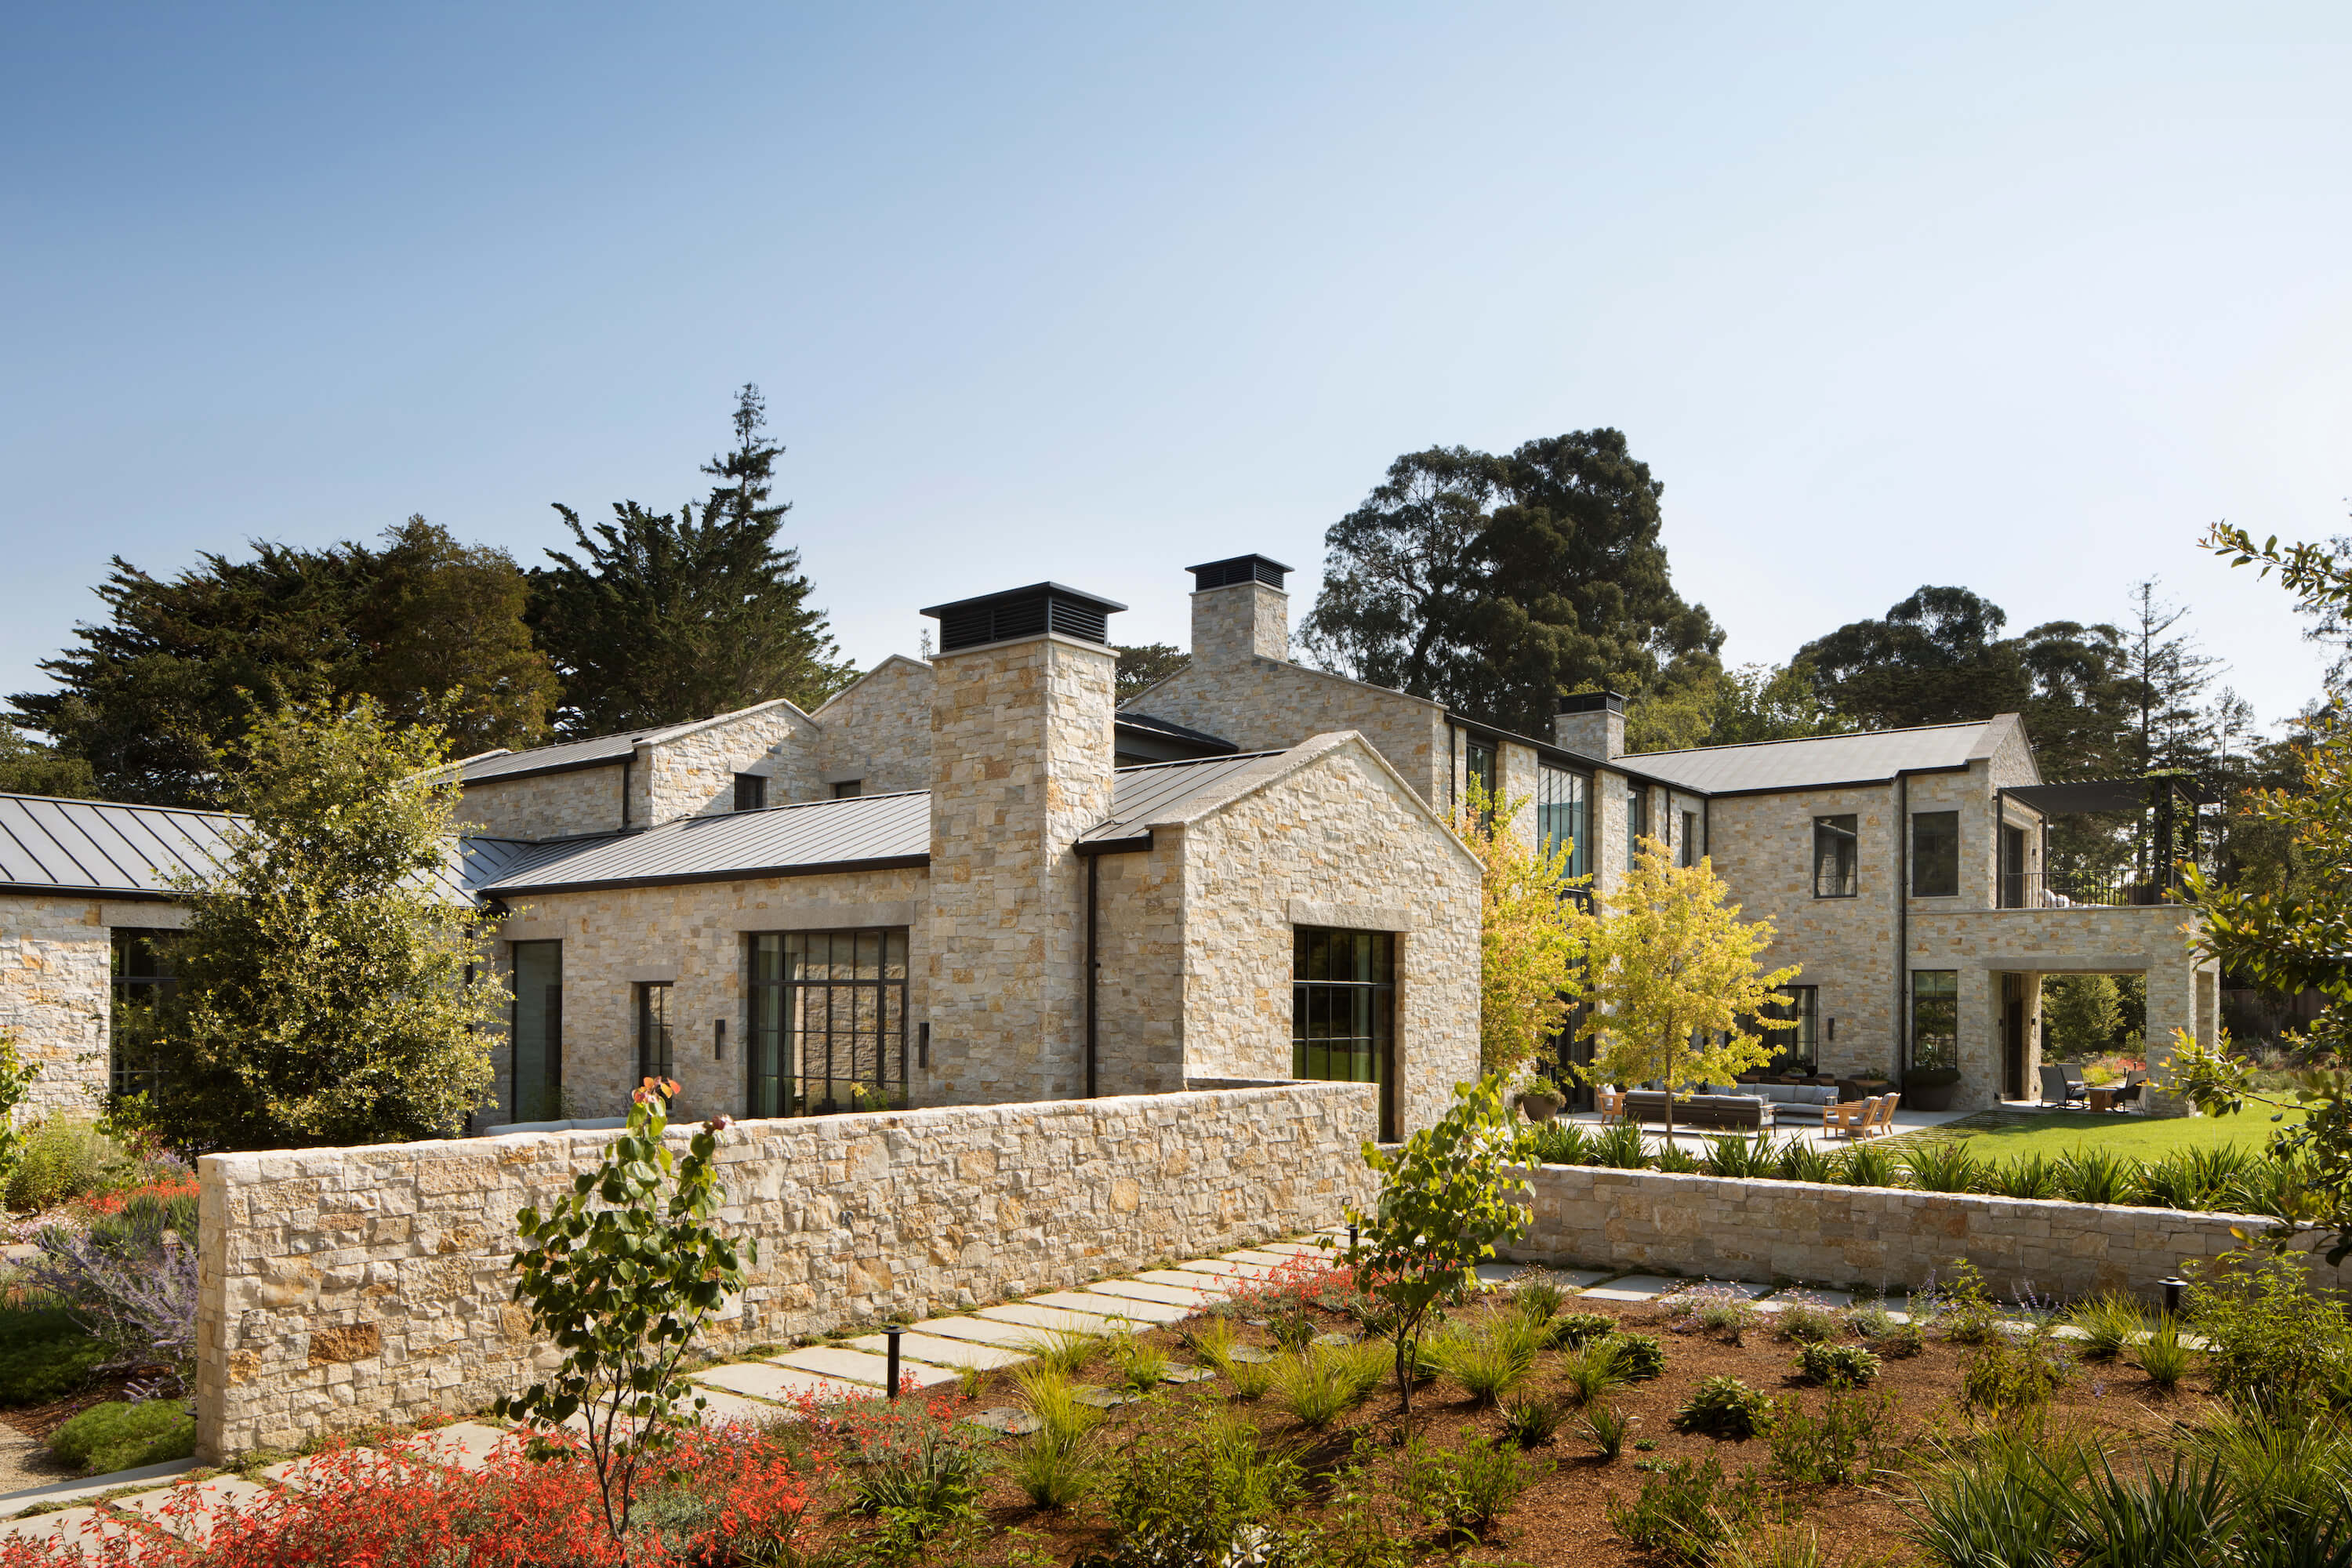 Peninsula Residence by Richard Beard Architects